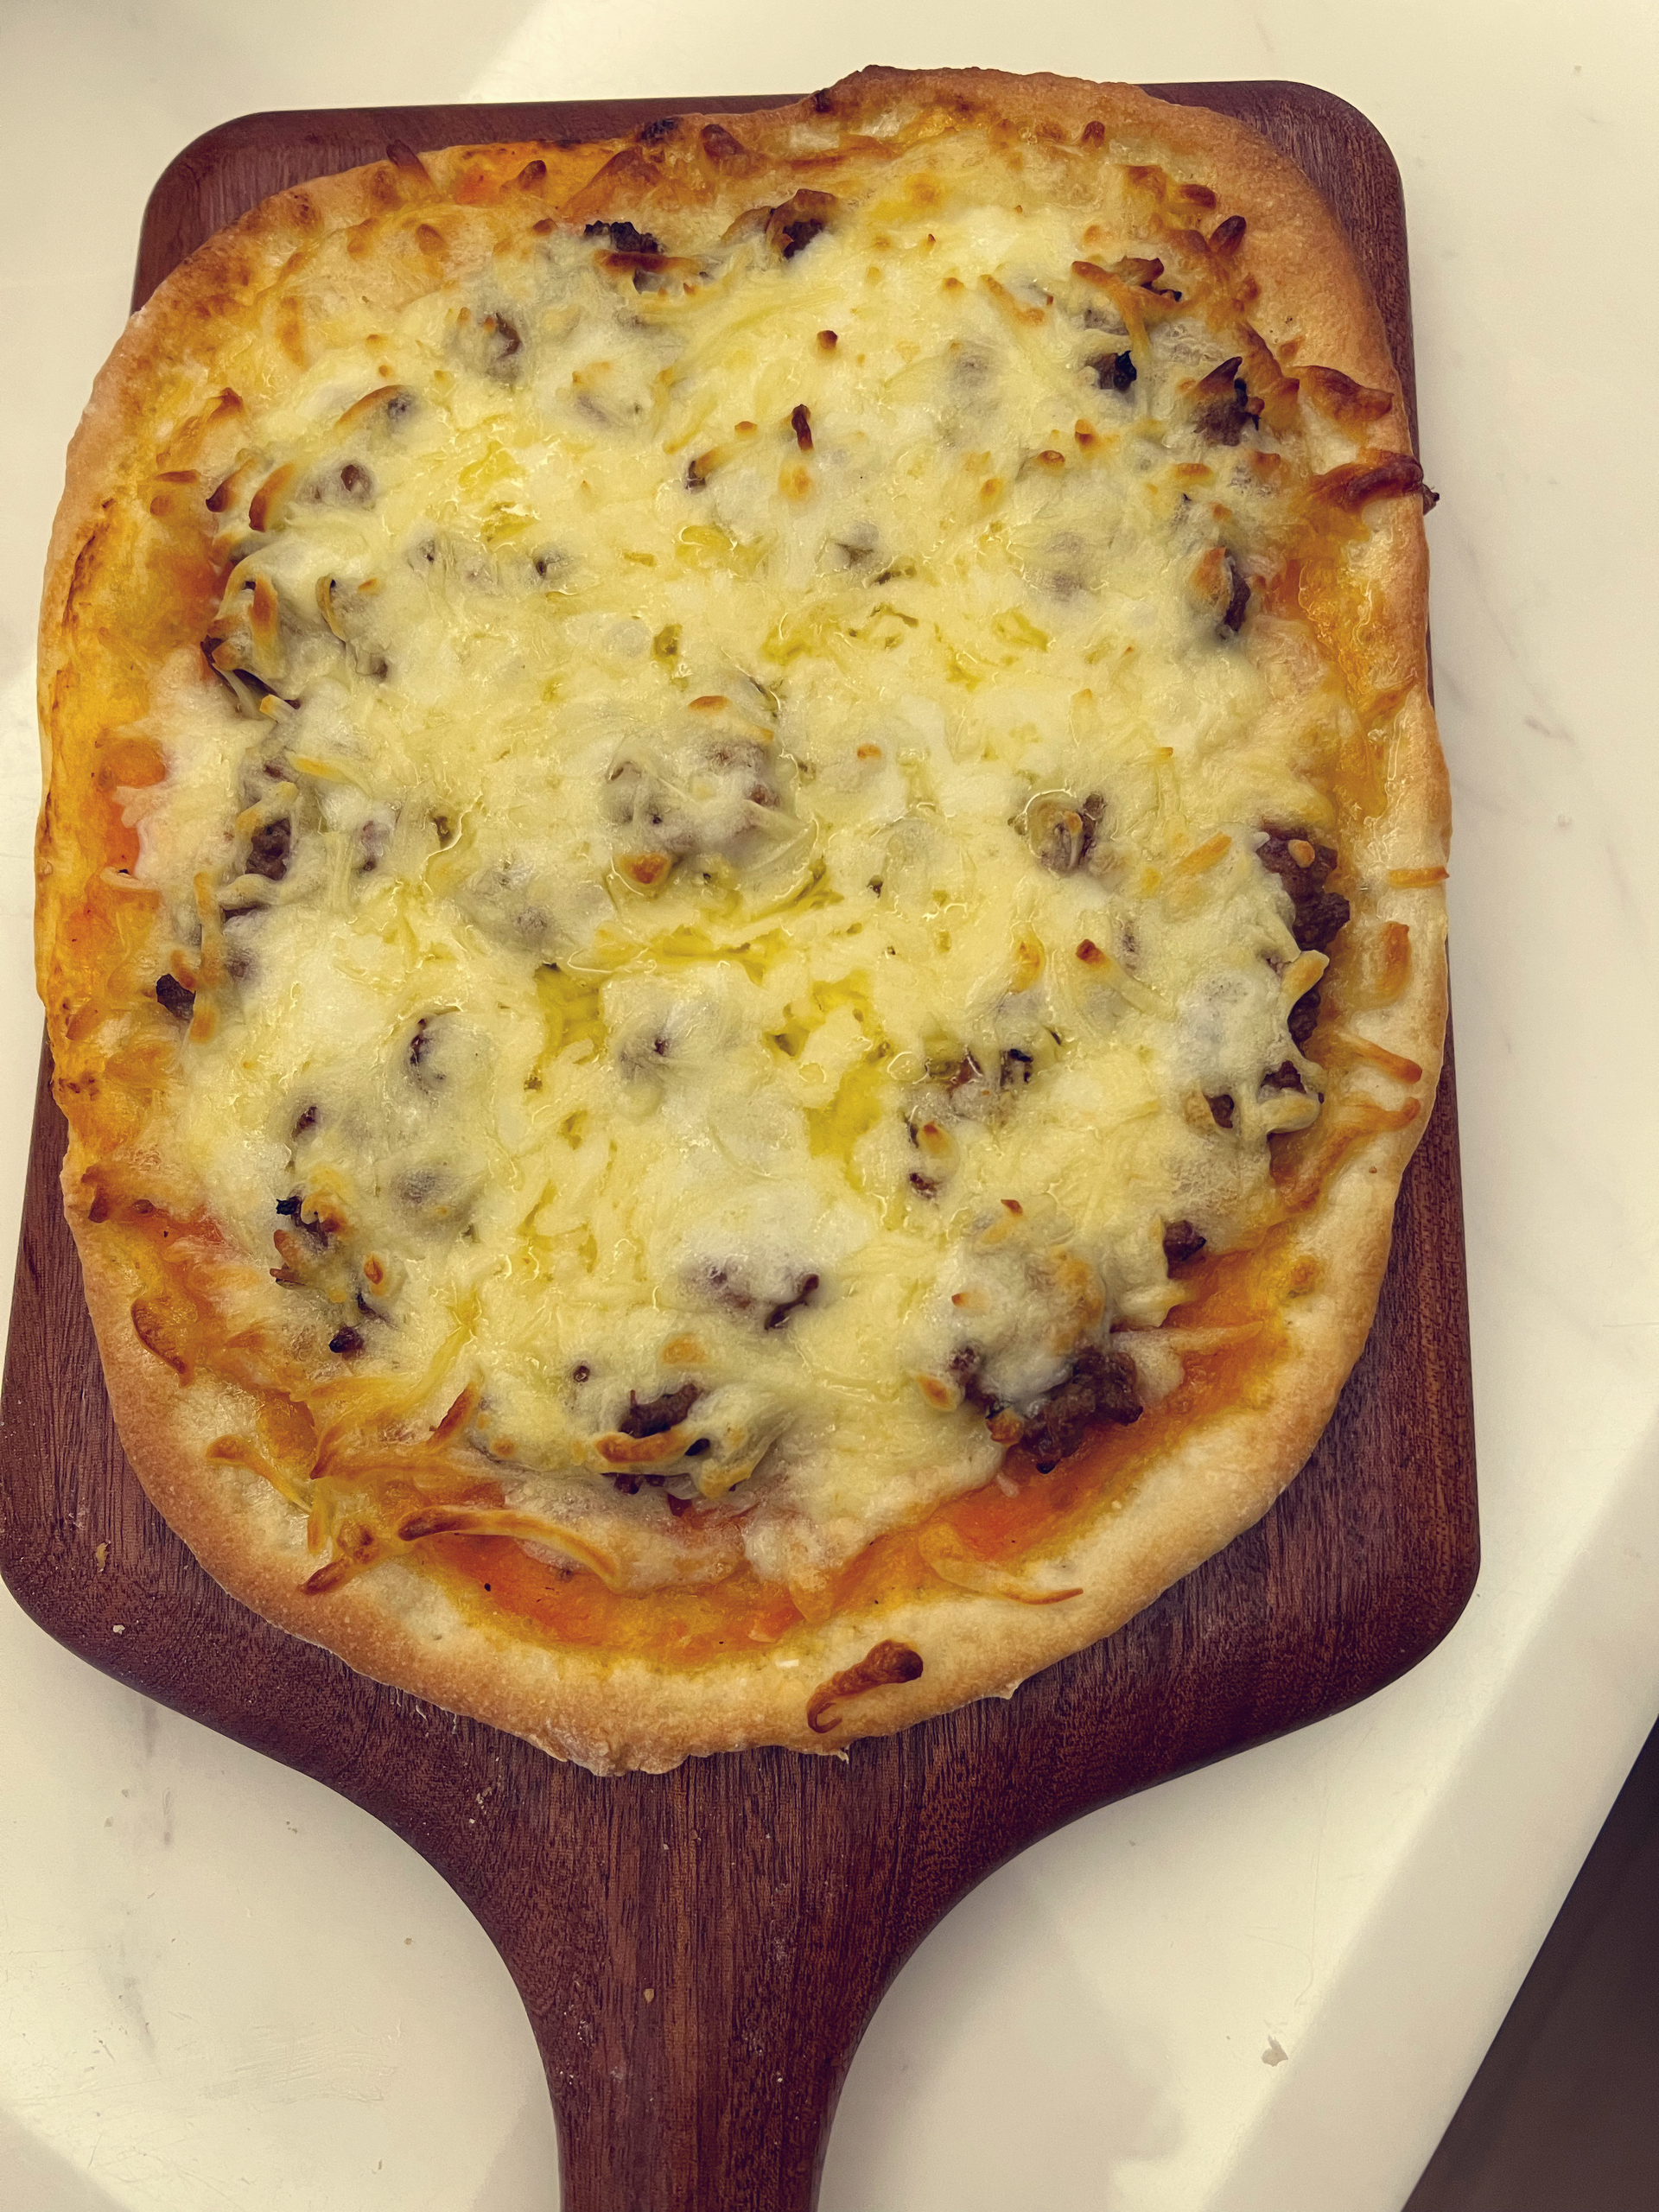 薄底披萨➕佛卡夏做法🍕在家自制正宗披萨